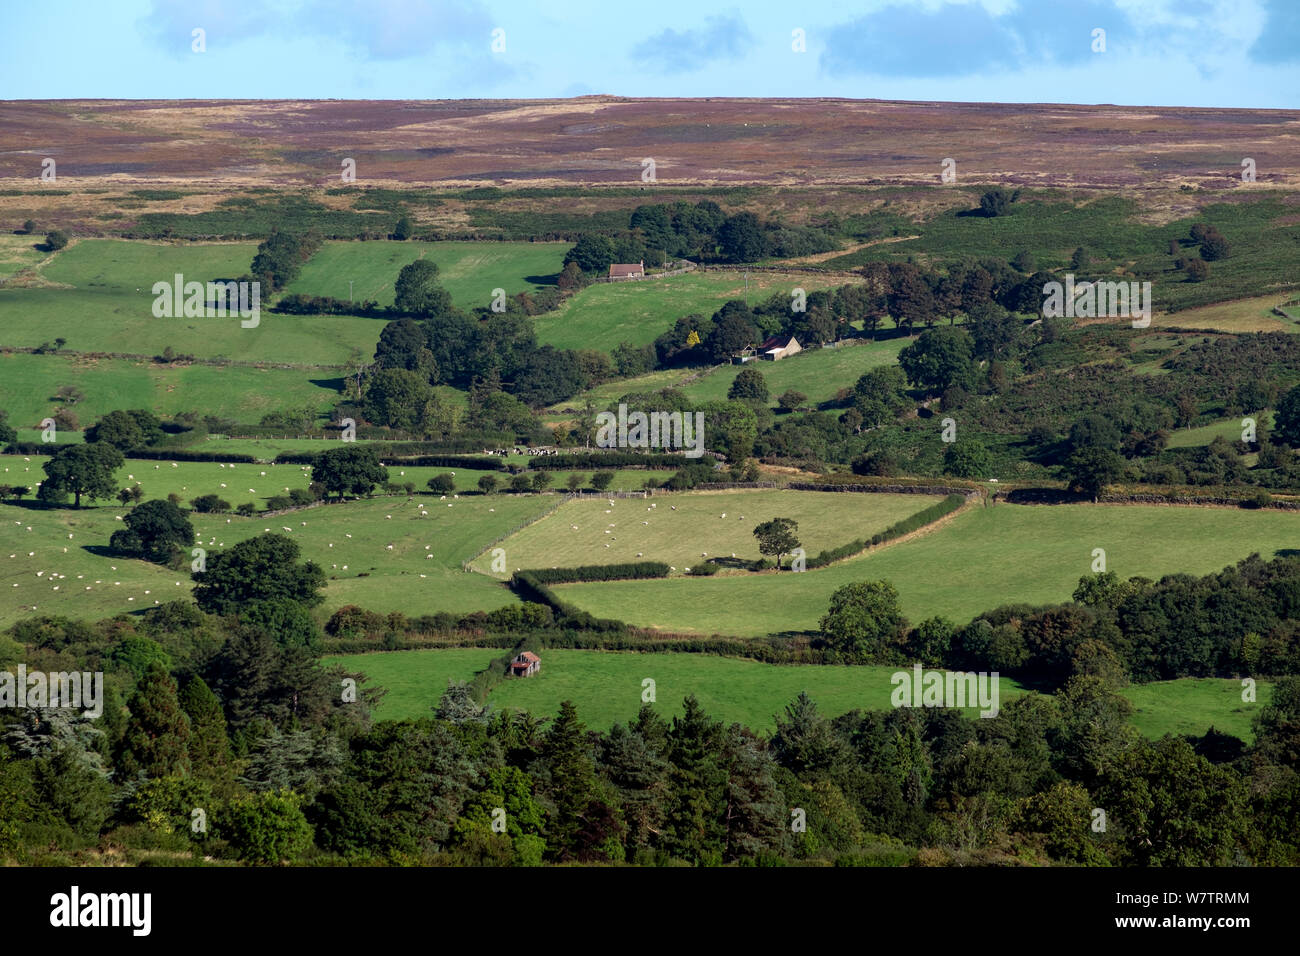 Ausblick auf die Landschaft mit landwirtschaftlichen Gebäuden, Weide Weide und Hochmoore in Distanz, North York Moors National Park, England, UK, September 2013. Stockfoto